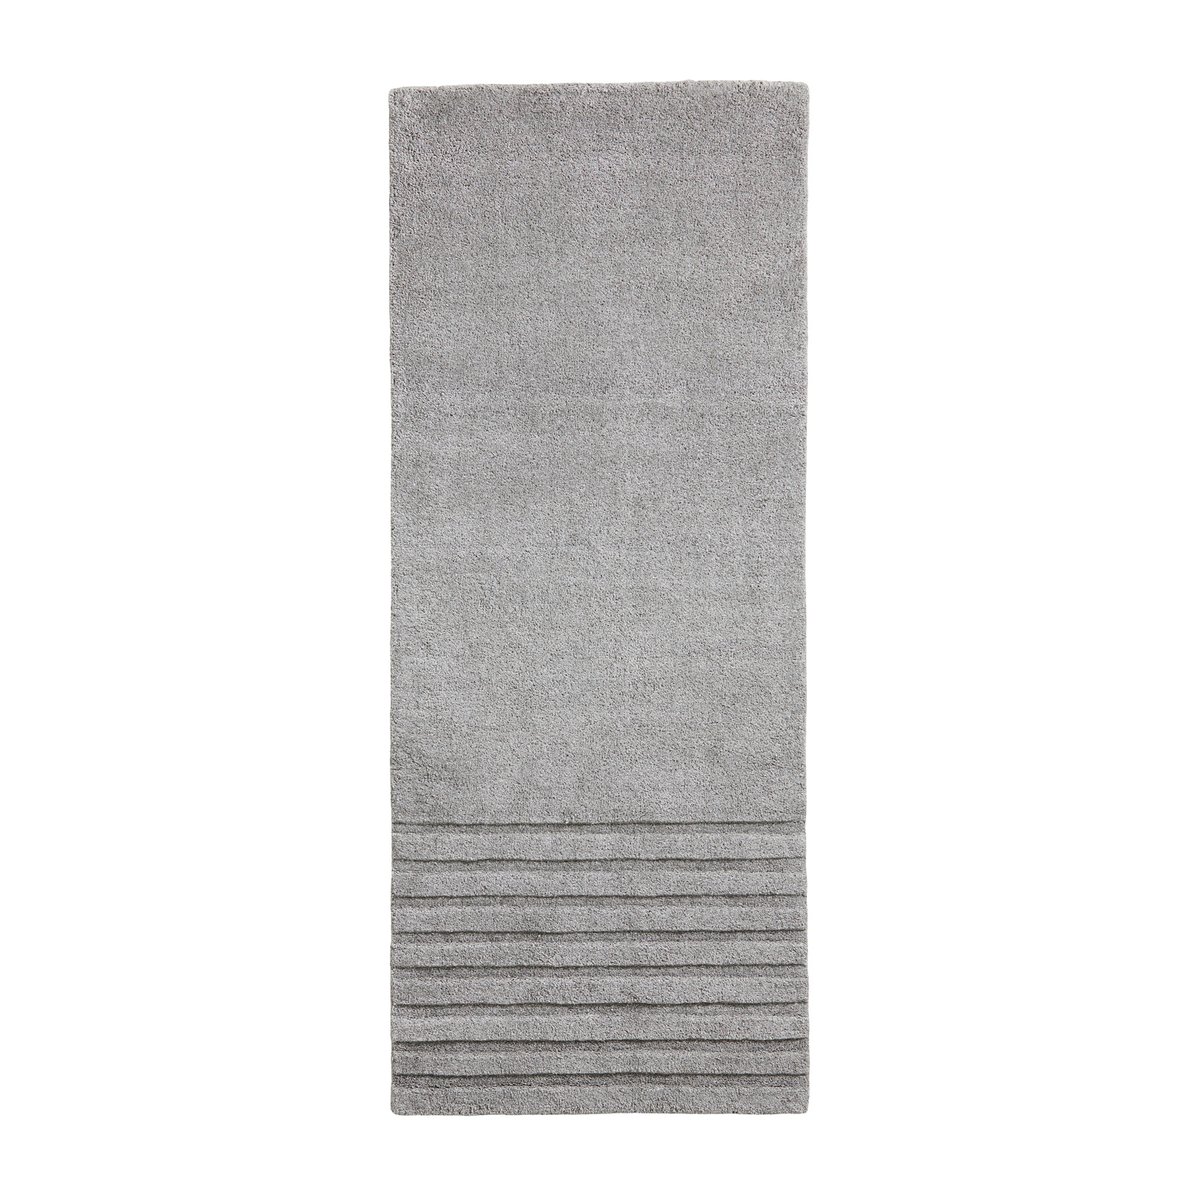 Woud Kyoto vloerkleed grijs 80x200 cm